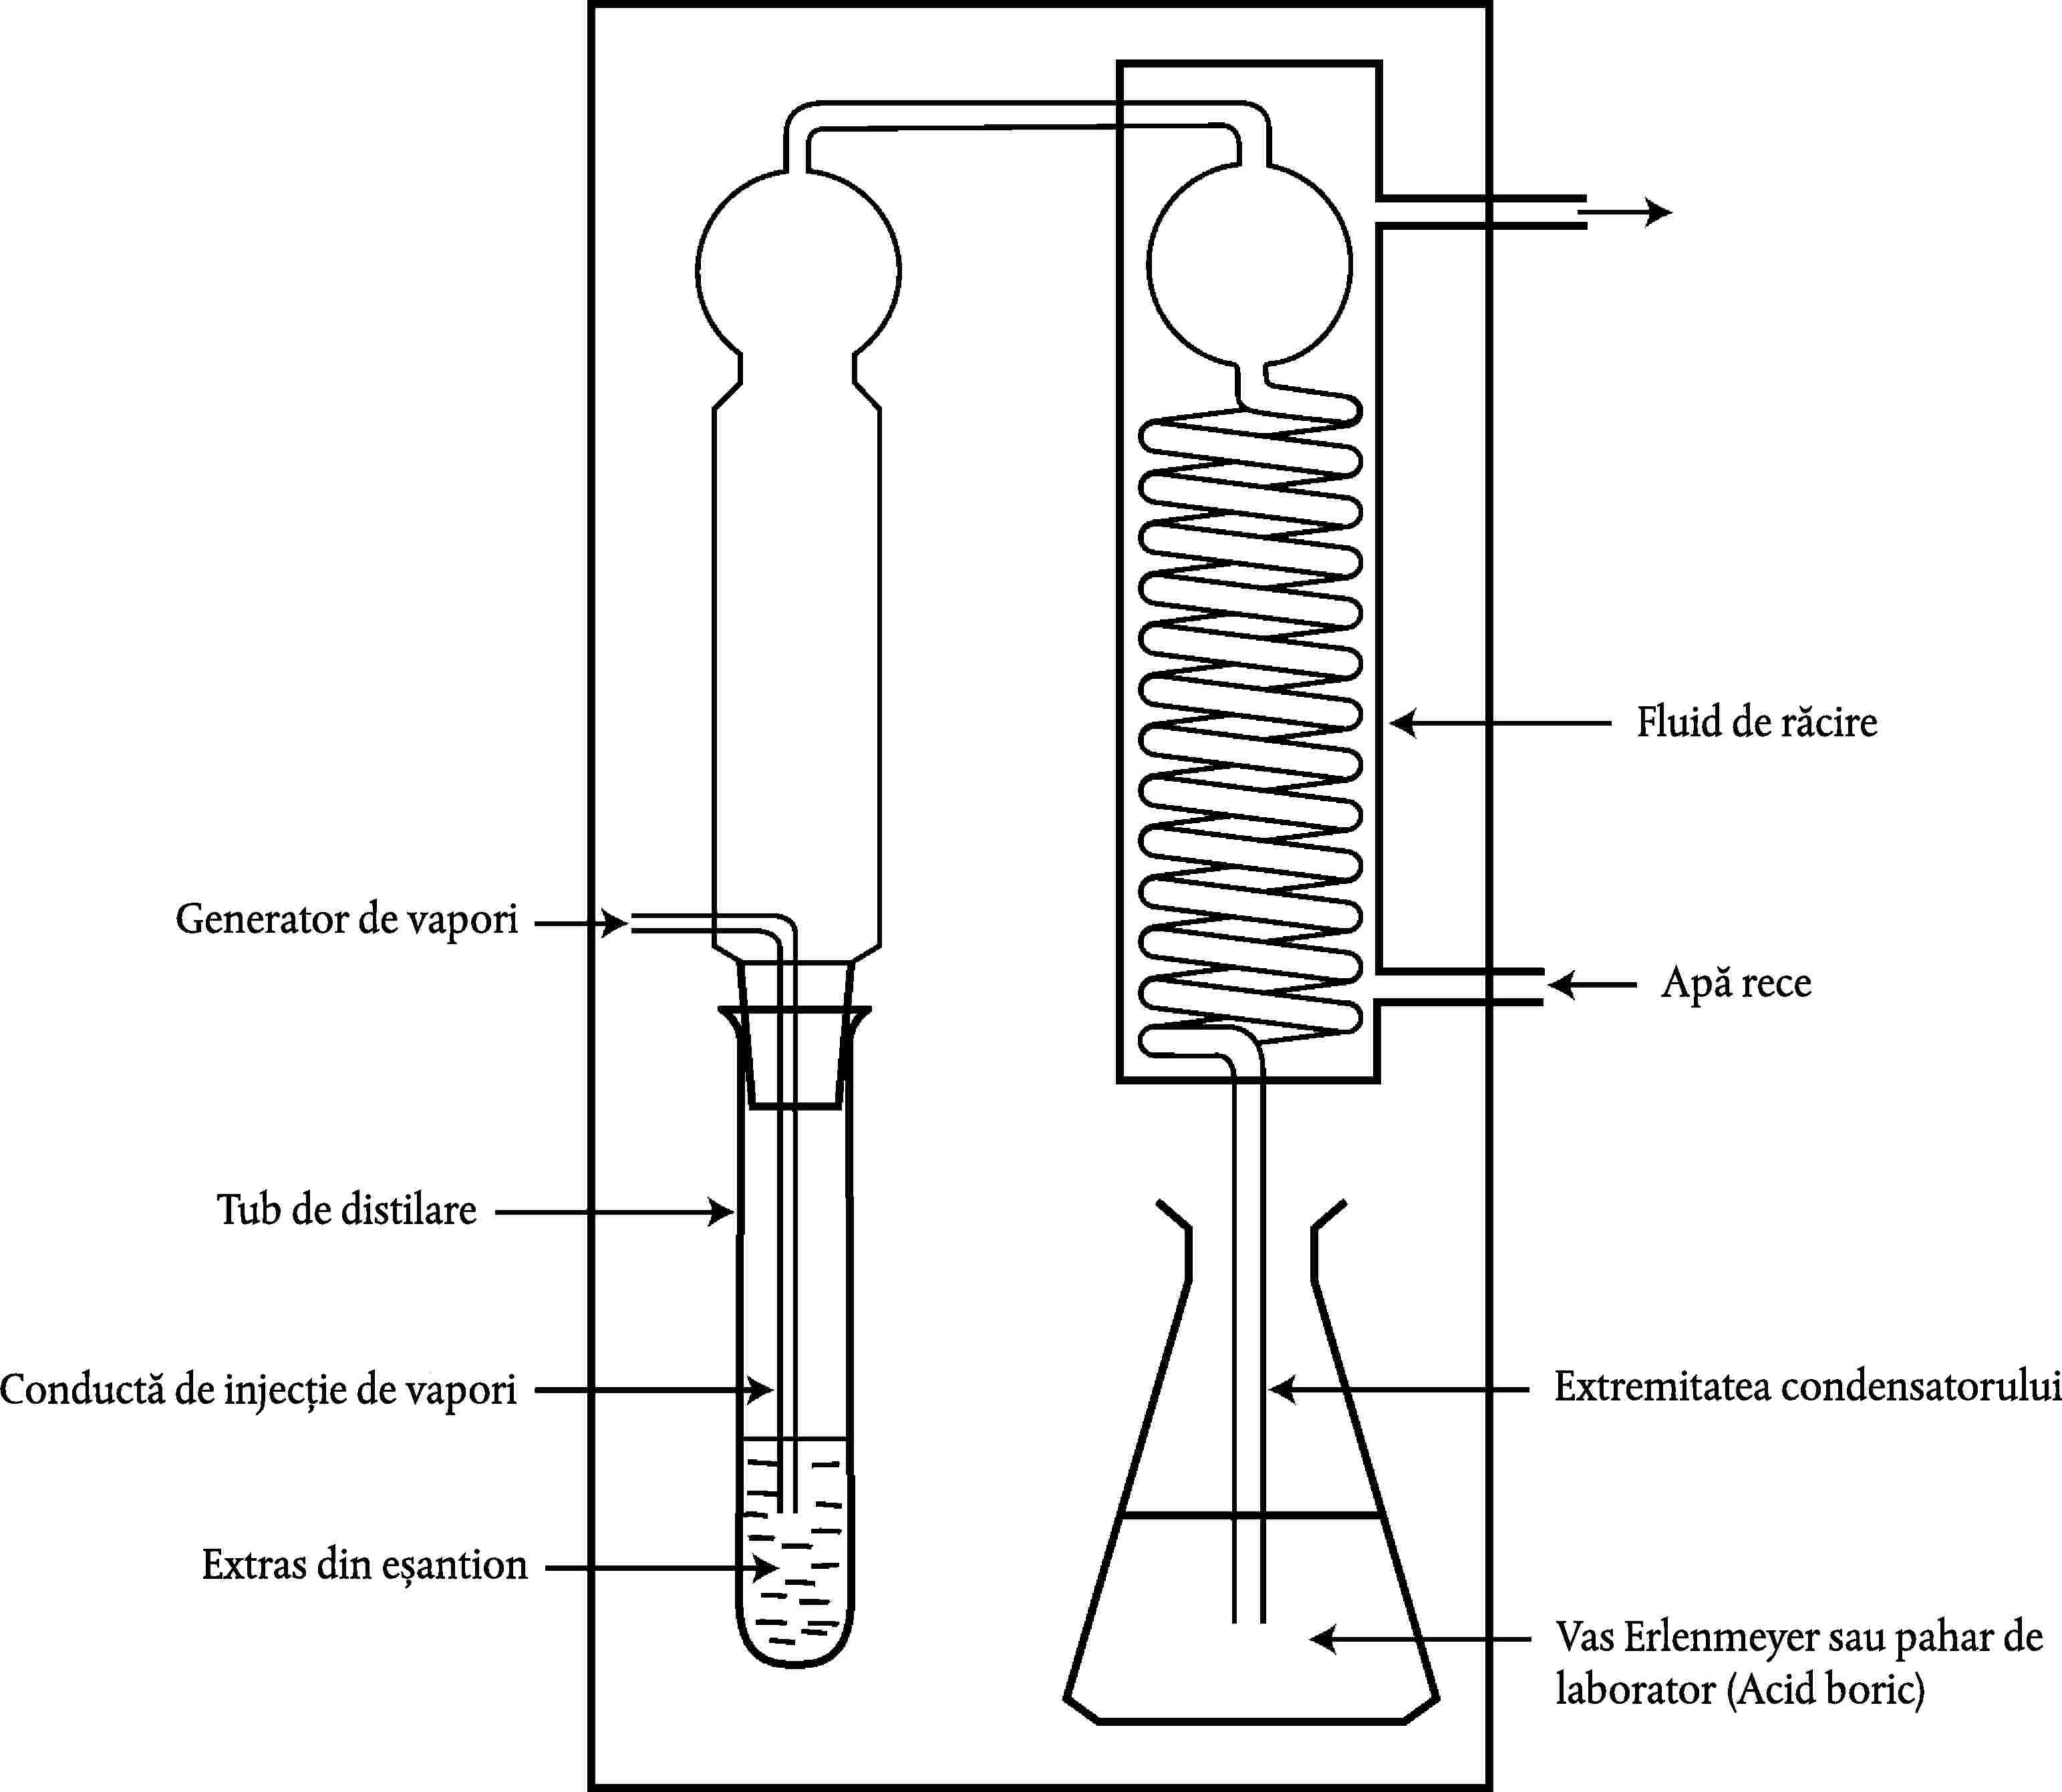 Fluid de răcireGenerator de vaporiApă receTub de distilareExtremitatea condensatoruluiConductă de injecție de vaporiExtras din eșantionVas Erlenmeyer sau pahar de laborator (Acid boric)